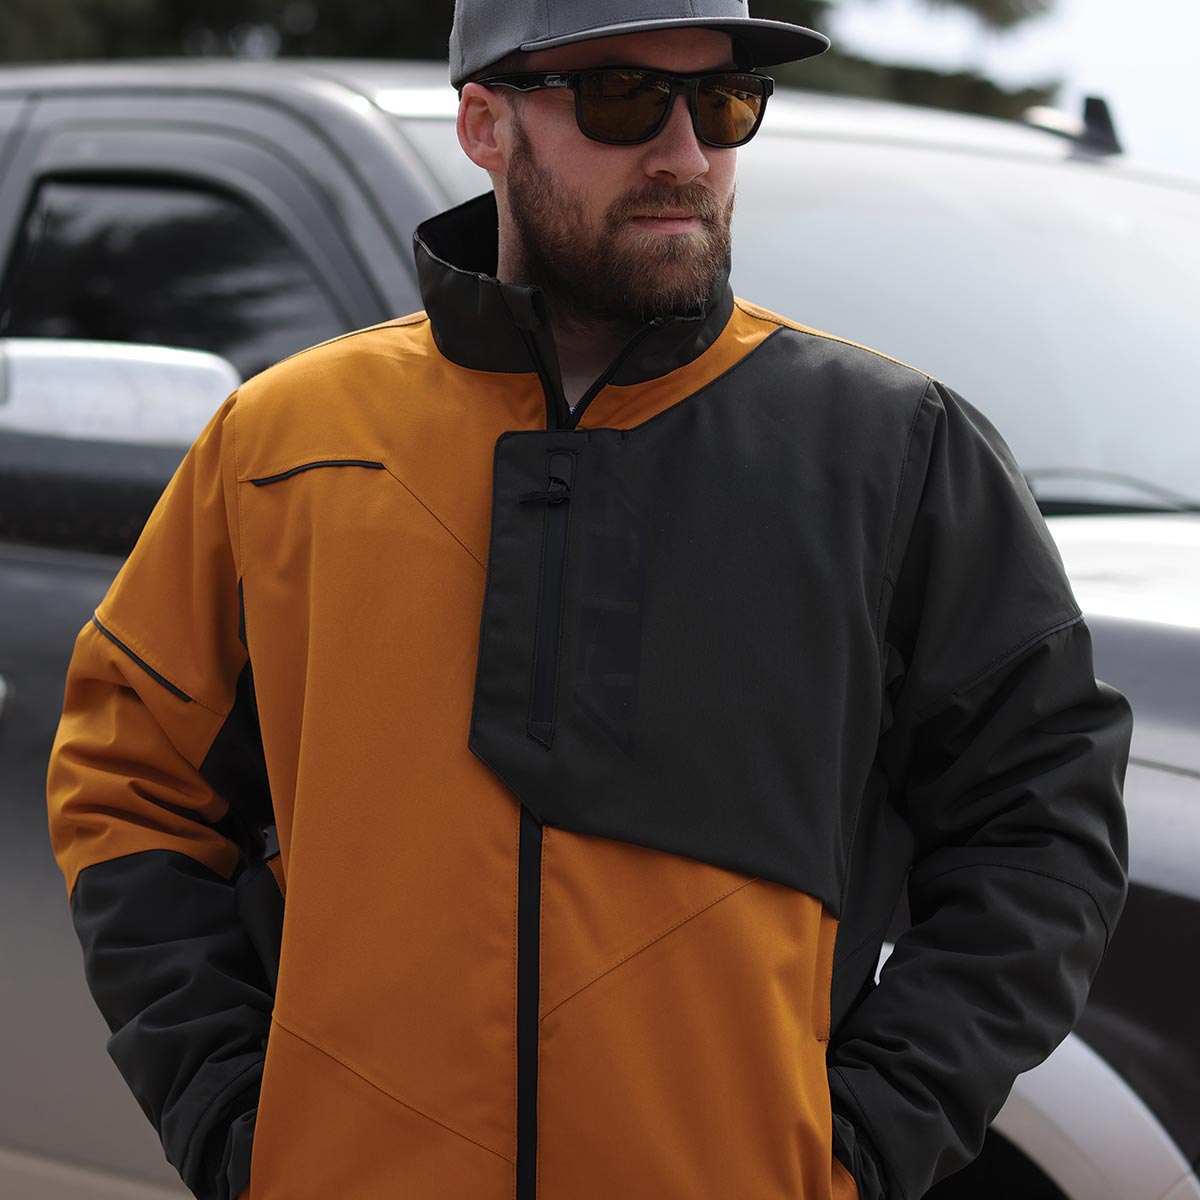 Range Insulated Jacket